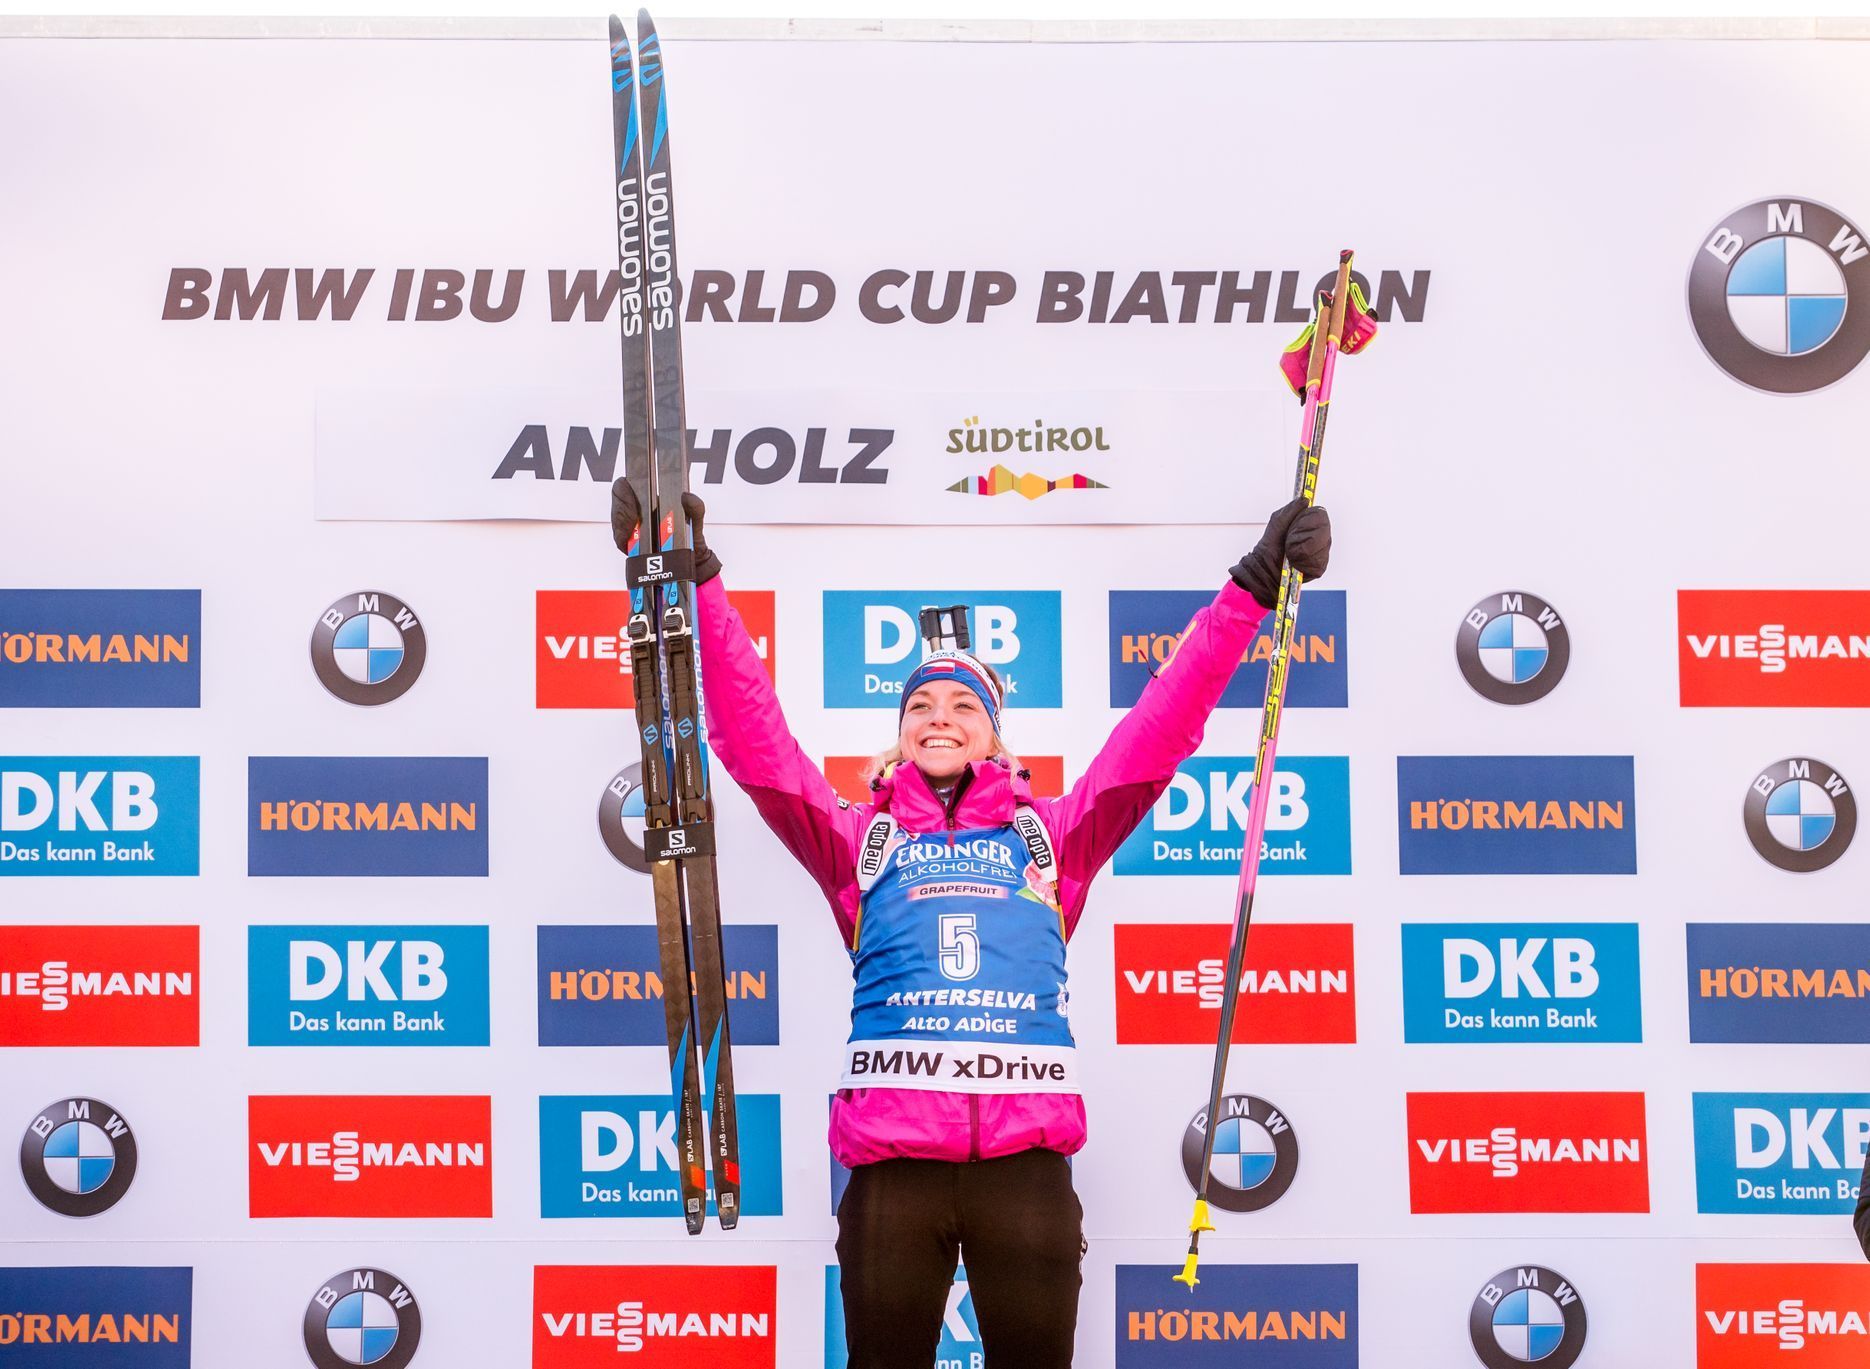 biatlon, SP 2018/2019, sprint v Anterselvě, Markéta Davidová na nejvyšším stupínku